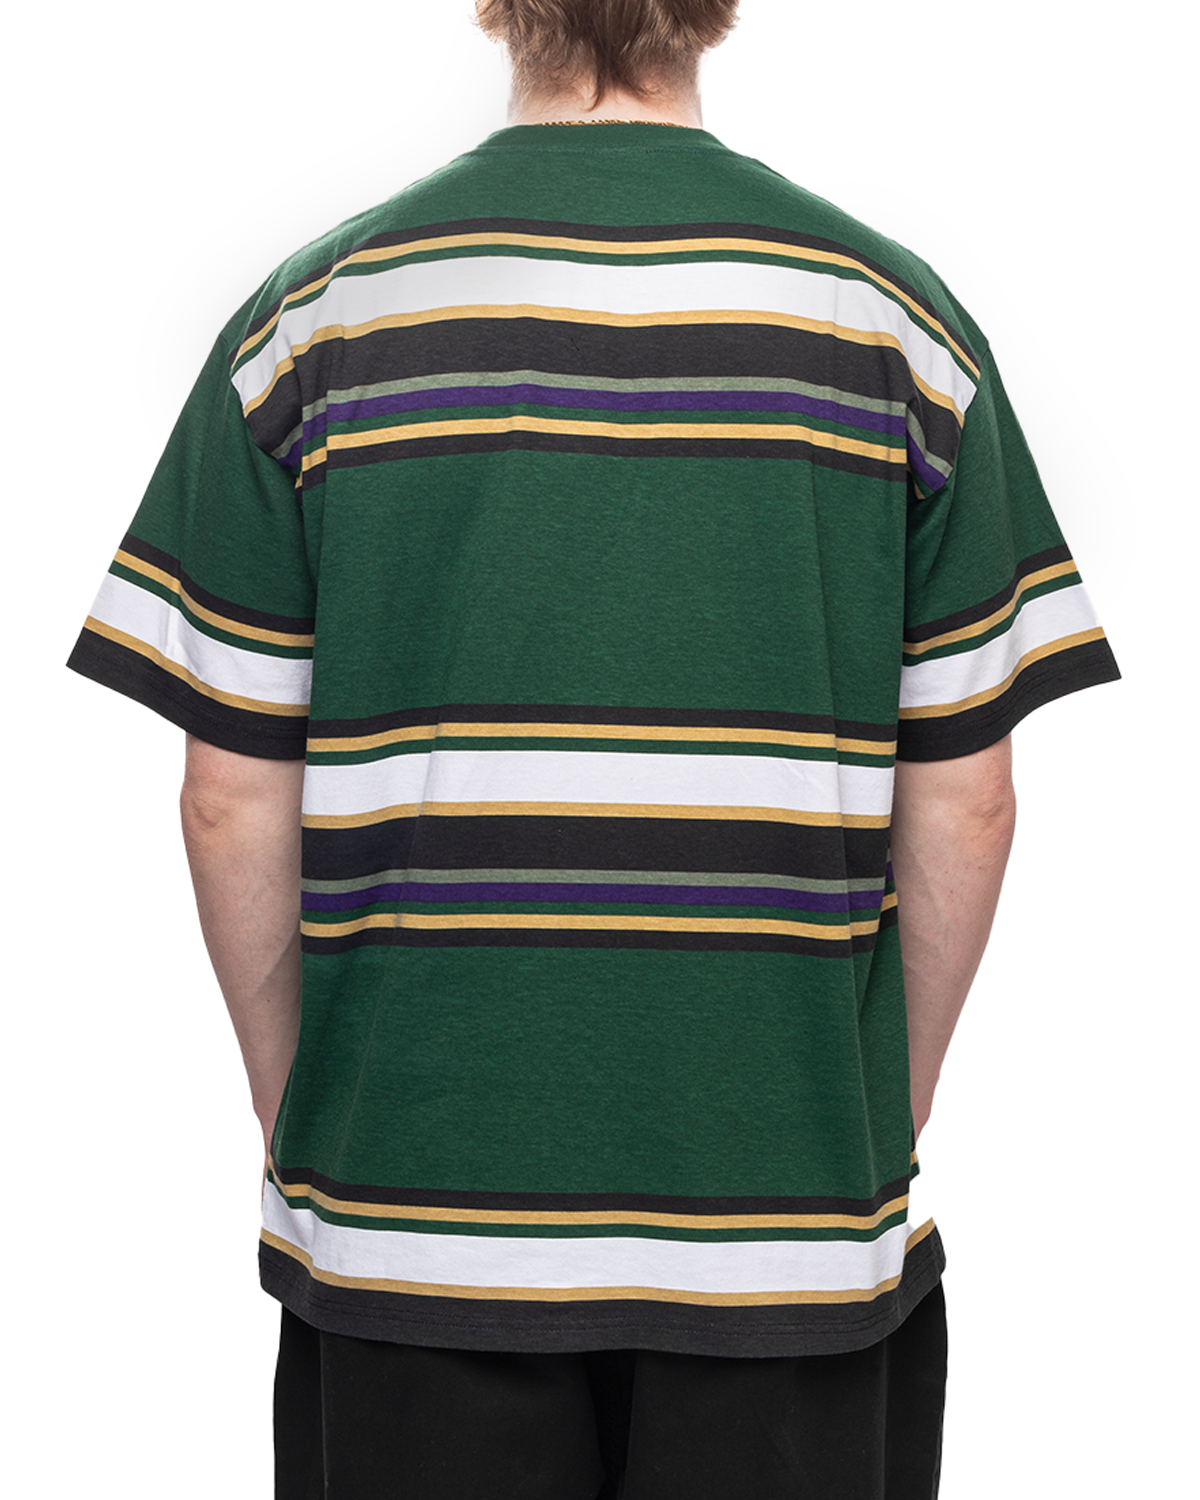 S/S Morcom T-Shirt Morcom Stripe/Chervil (Heavy Stone Wash)